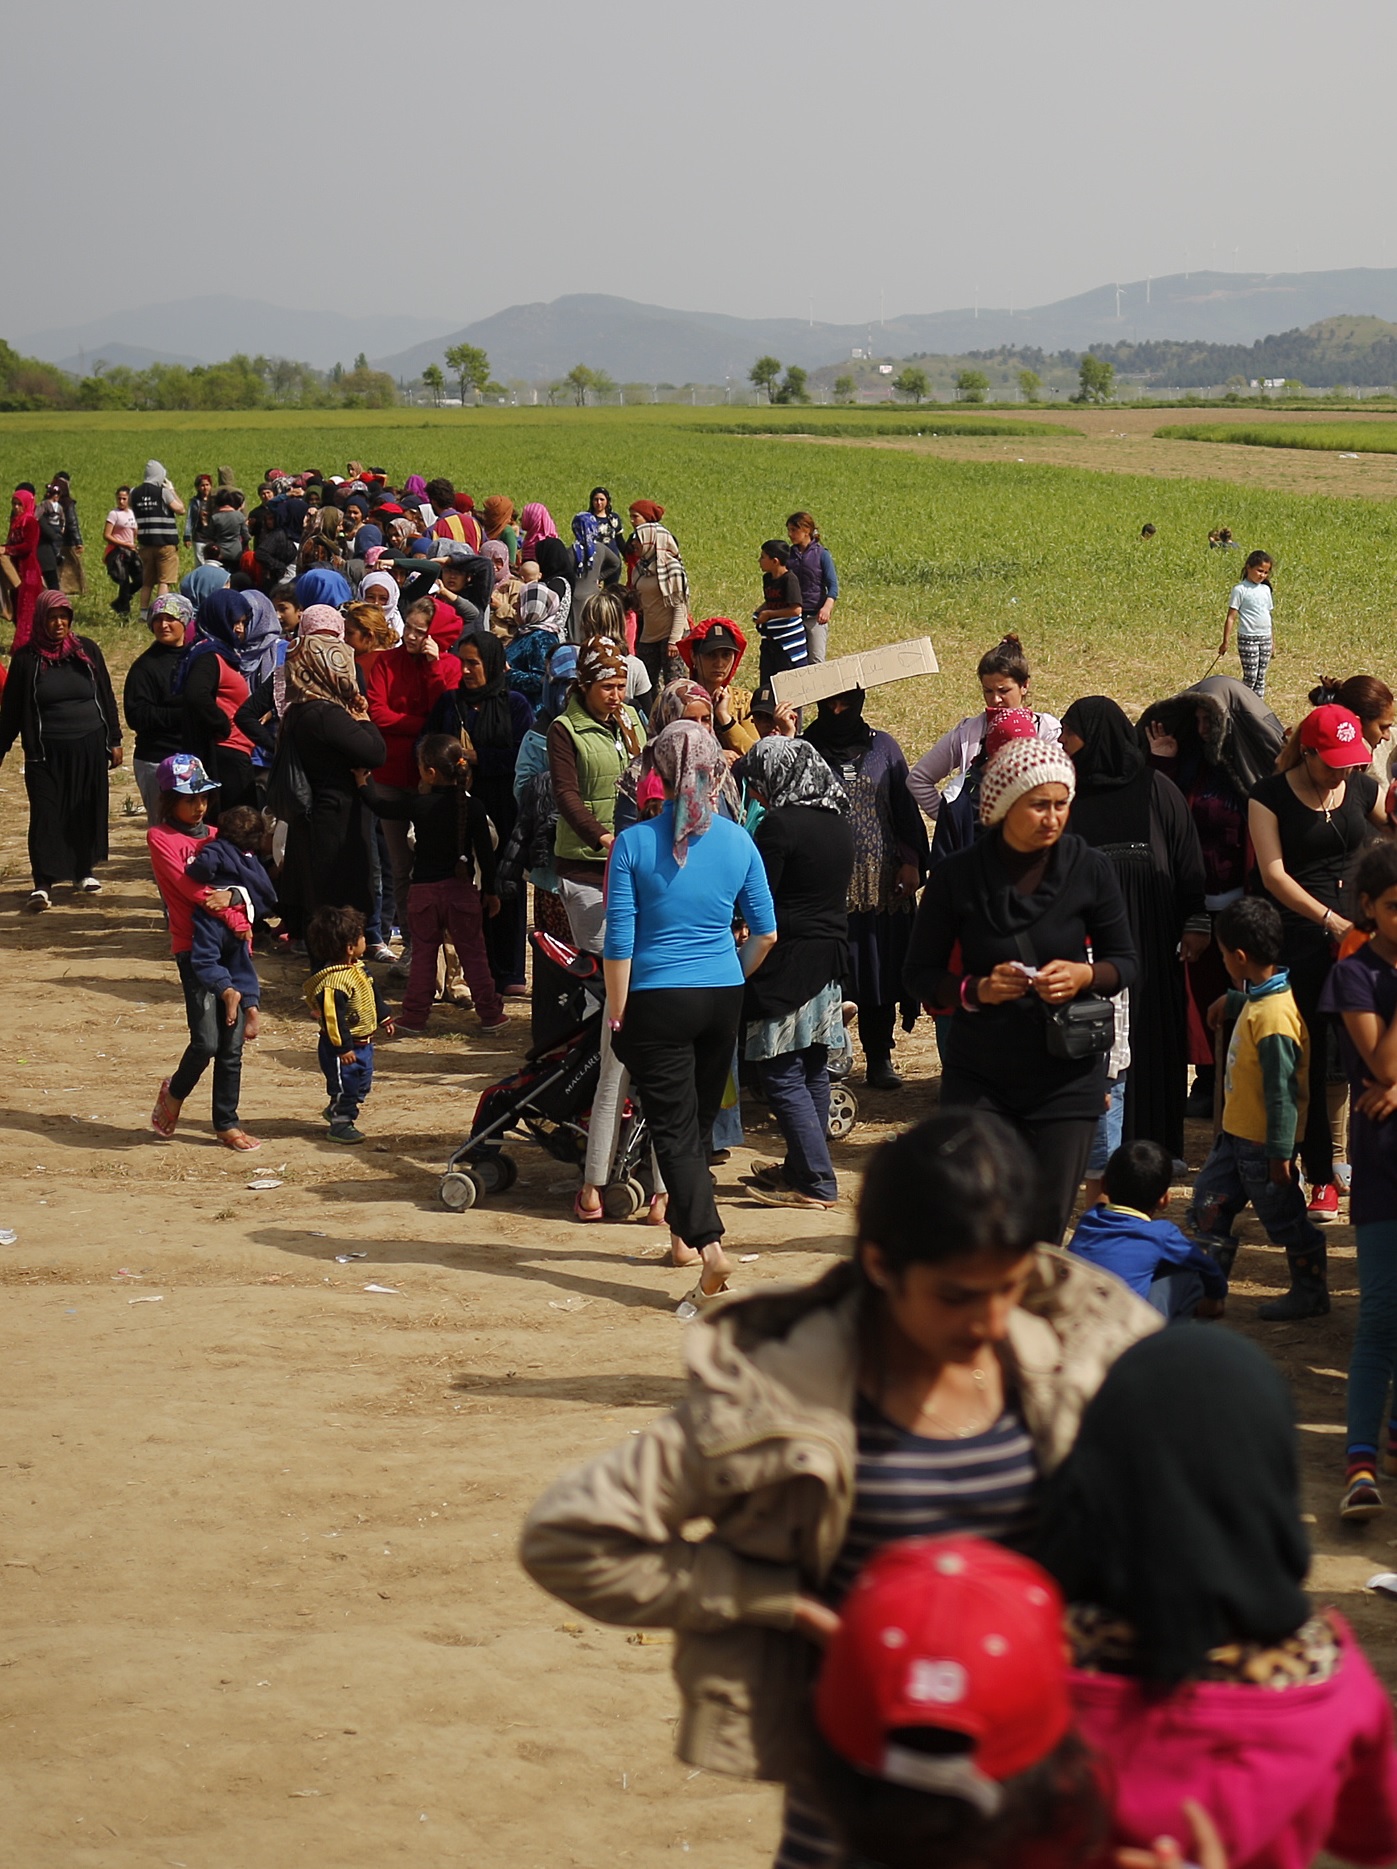 Foto: Altercados entre los refugiados en Idomeni (STOYAN NENOV / REUTERS) 